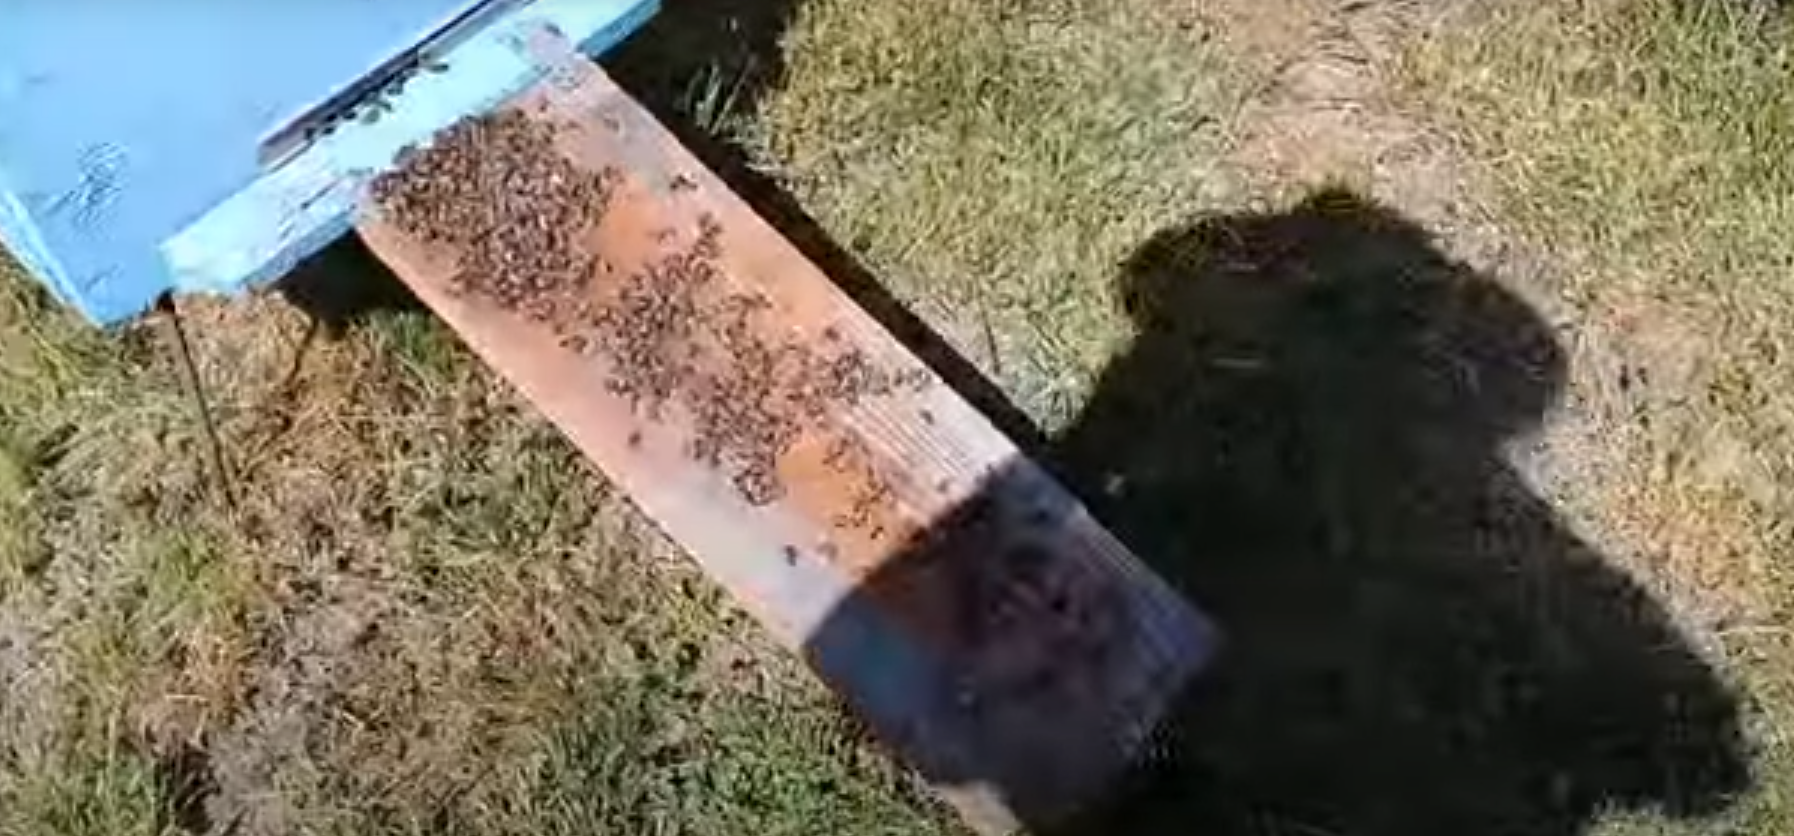 «Всю летную пчелу погубили». На пасеке в Стародубском районе началась массовая гибель пчел